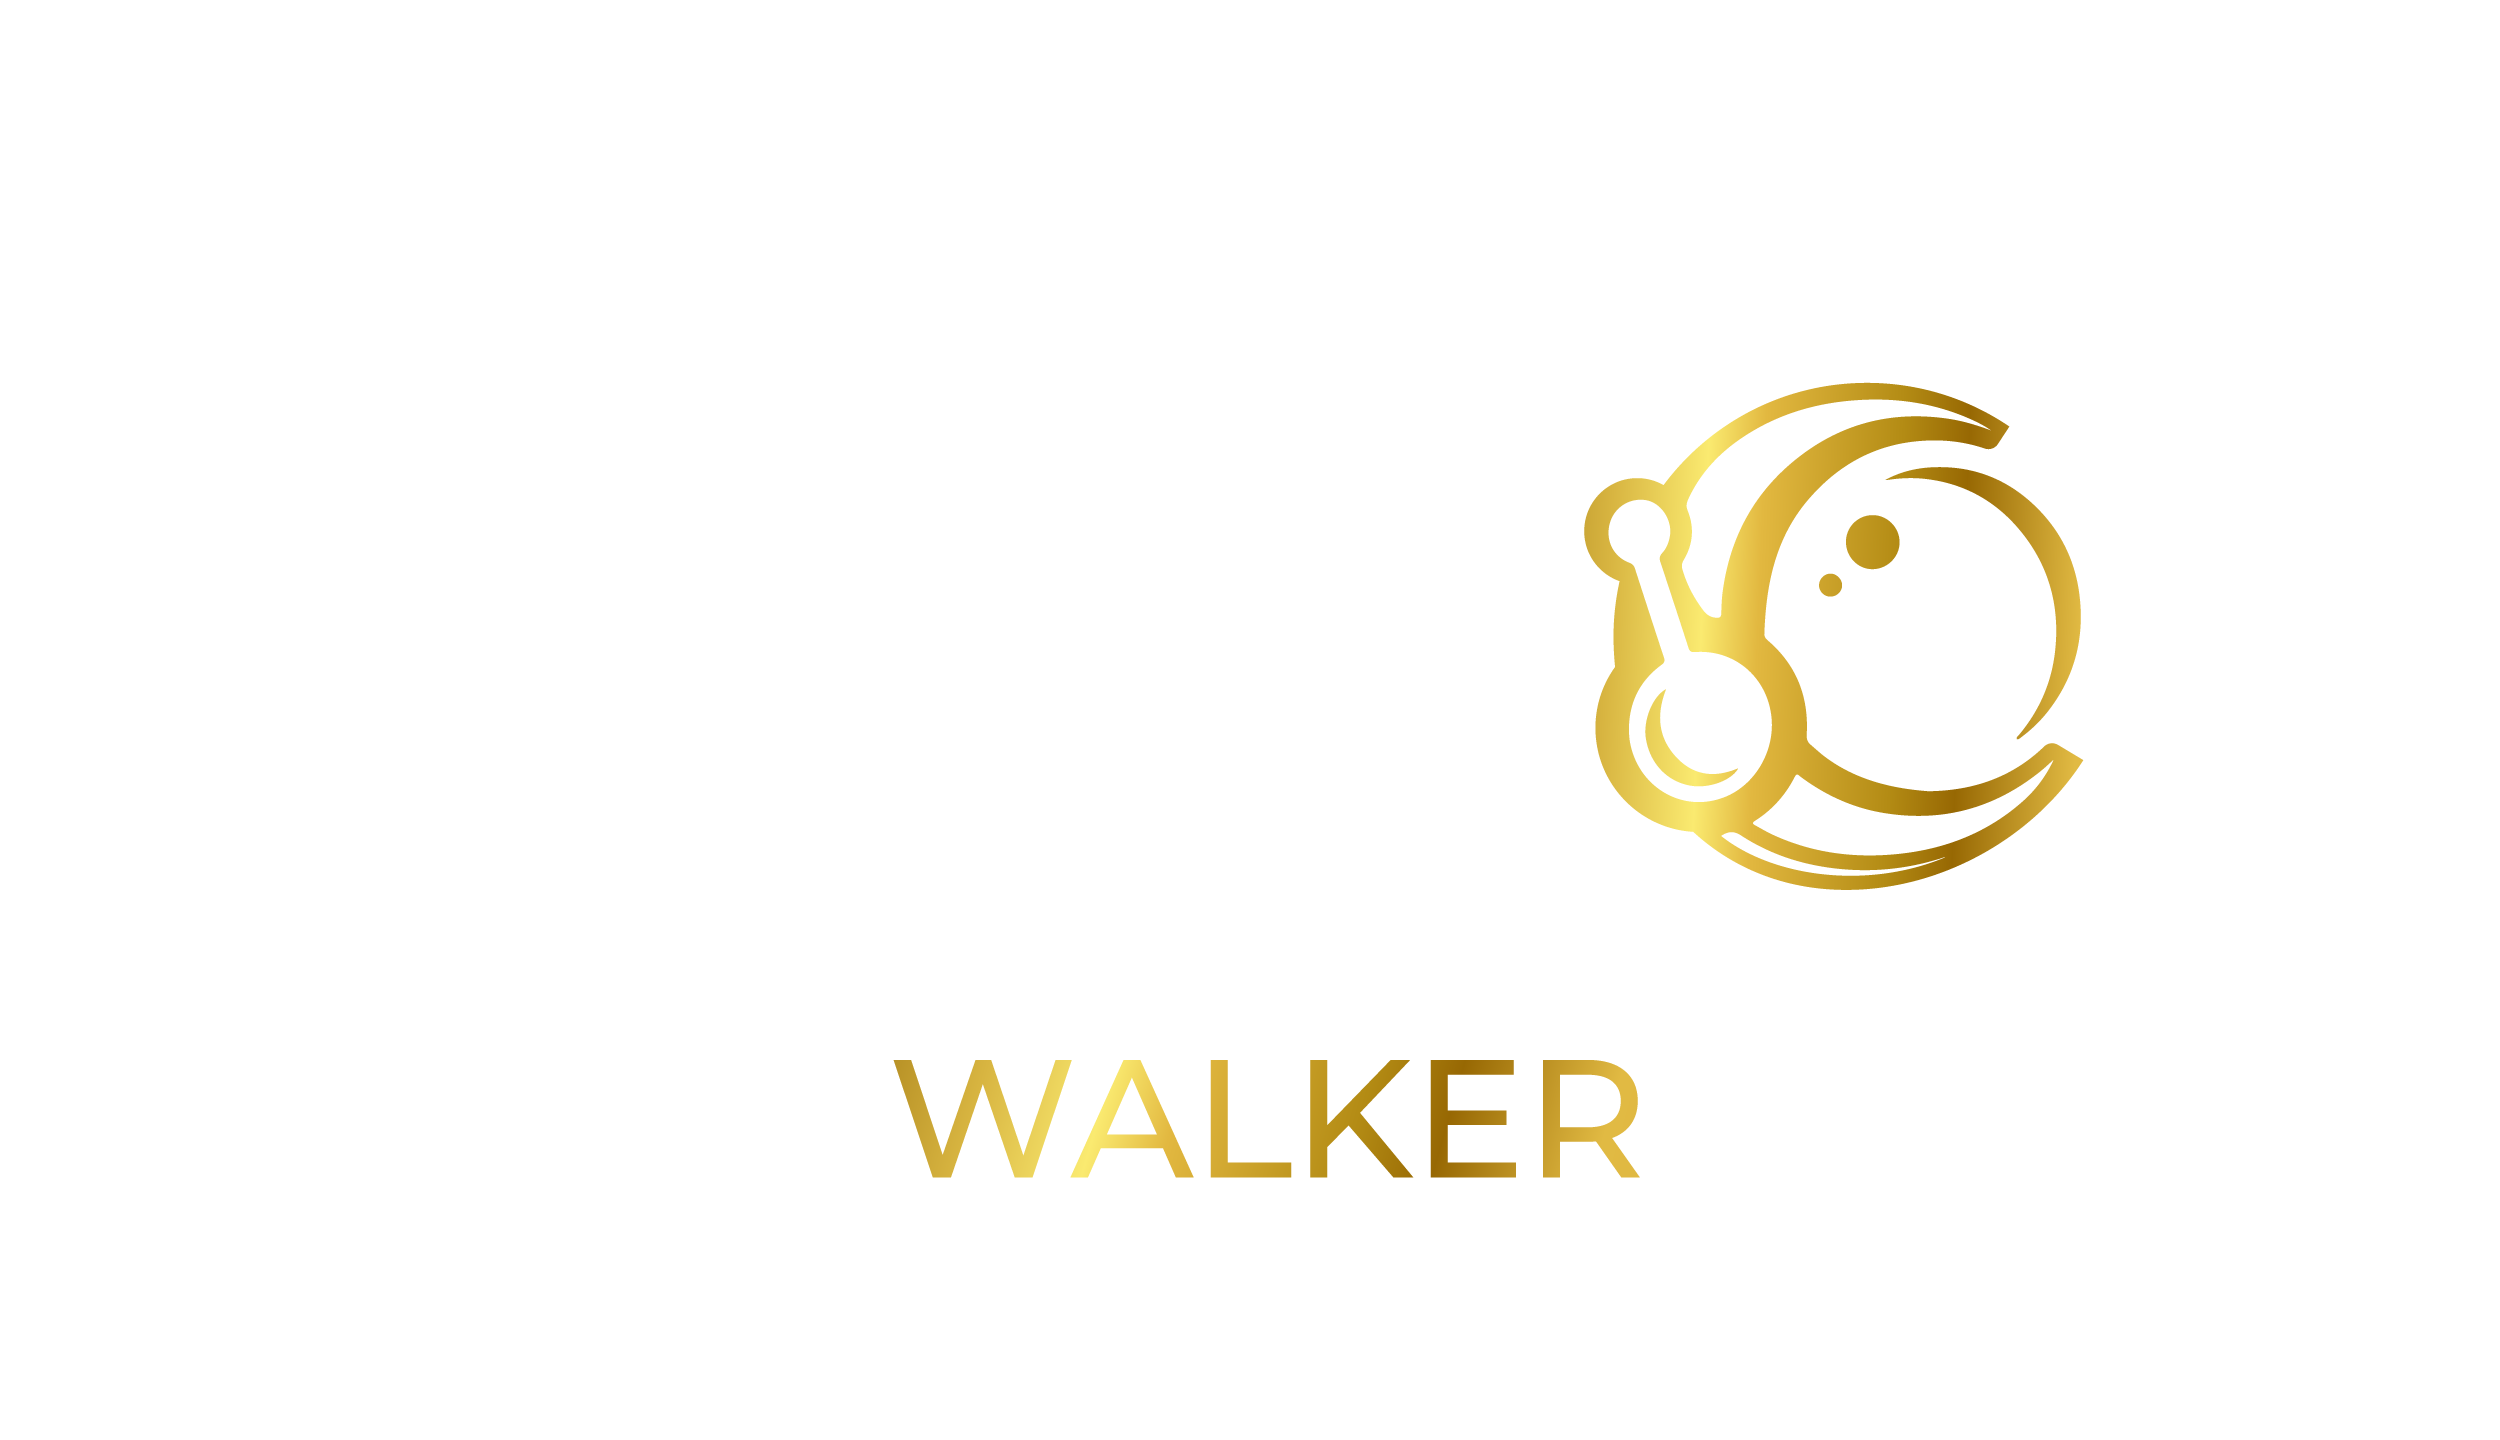 Moonwalker.club